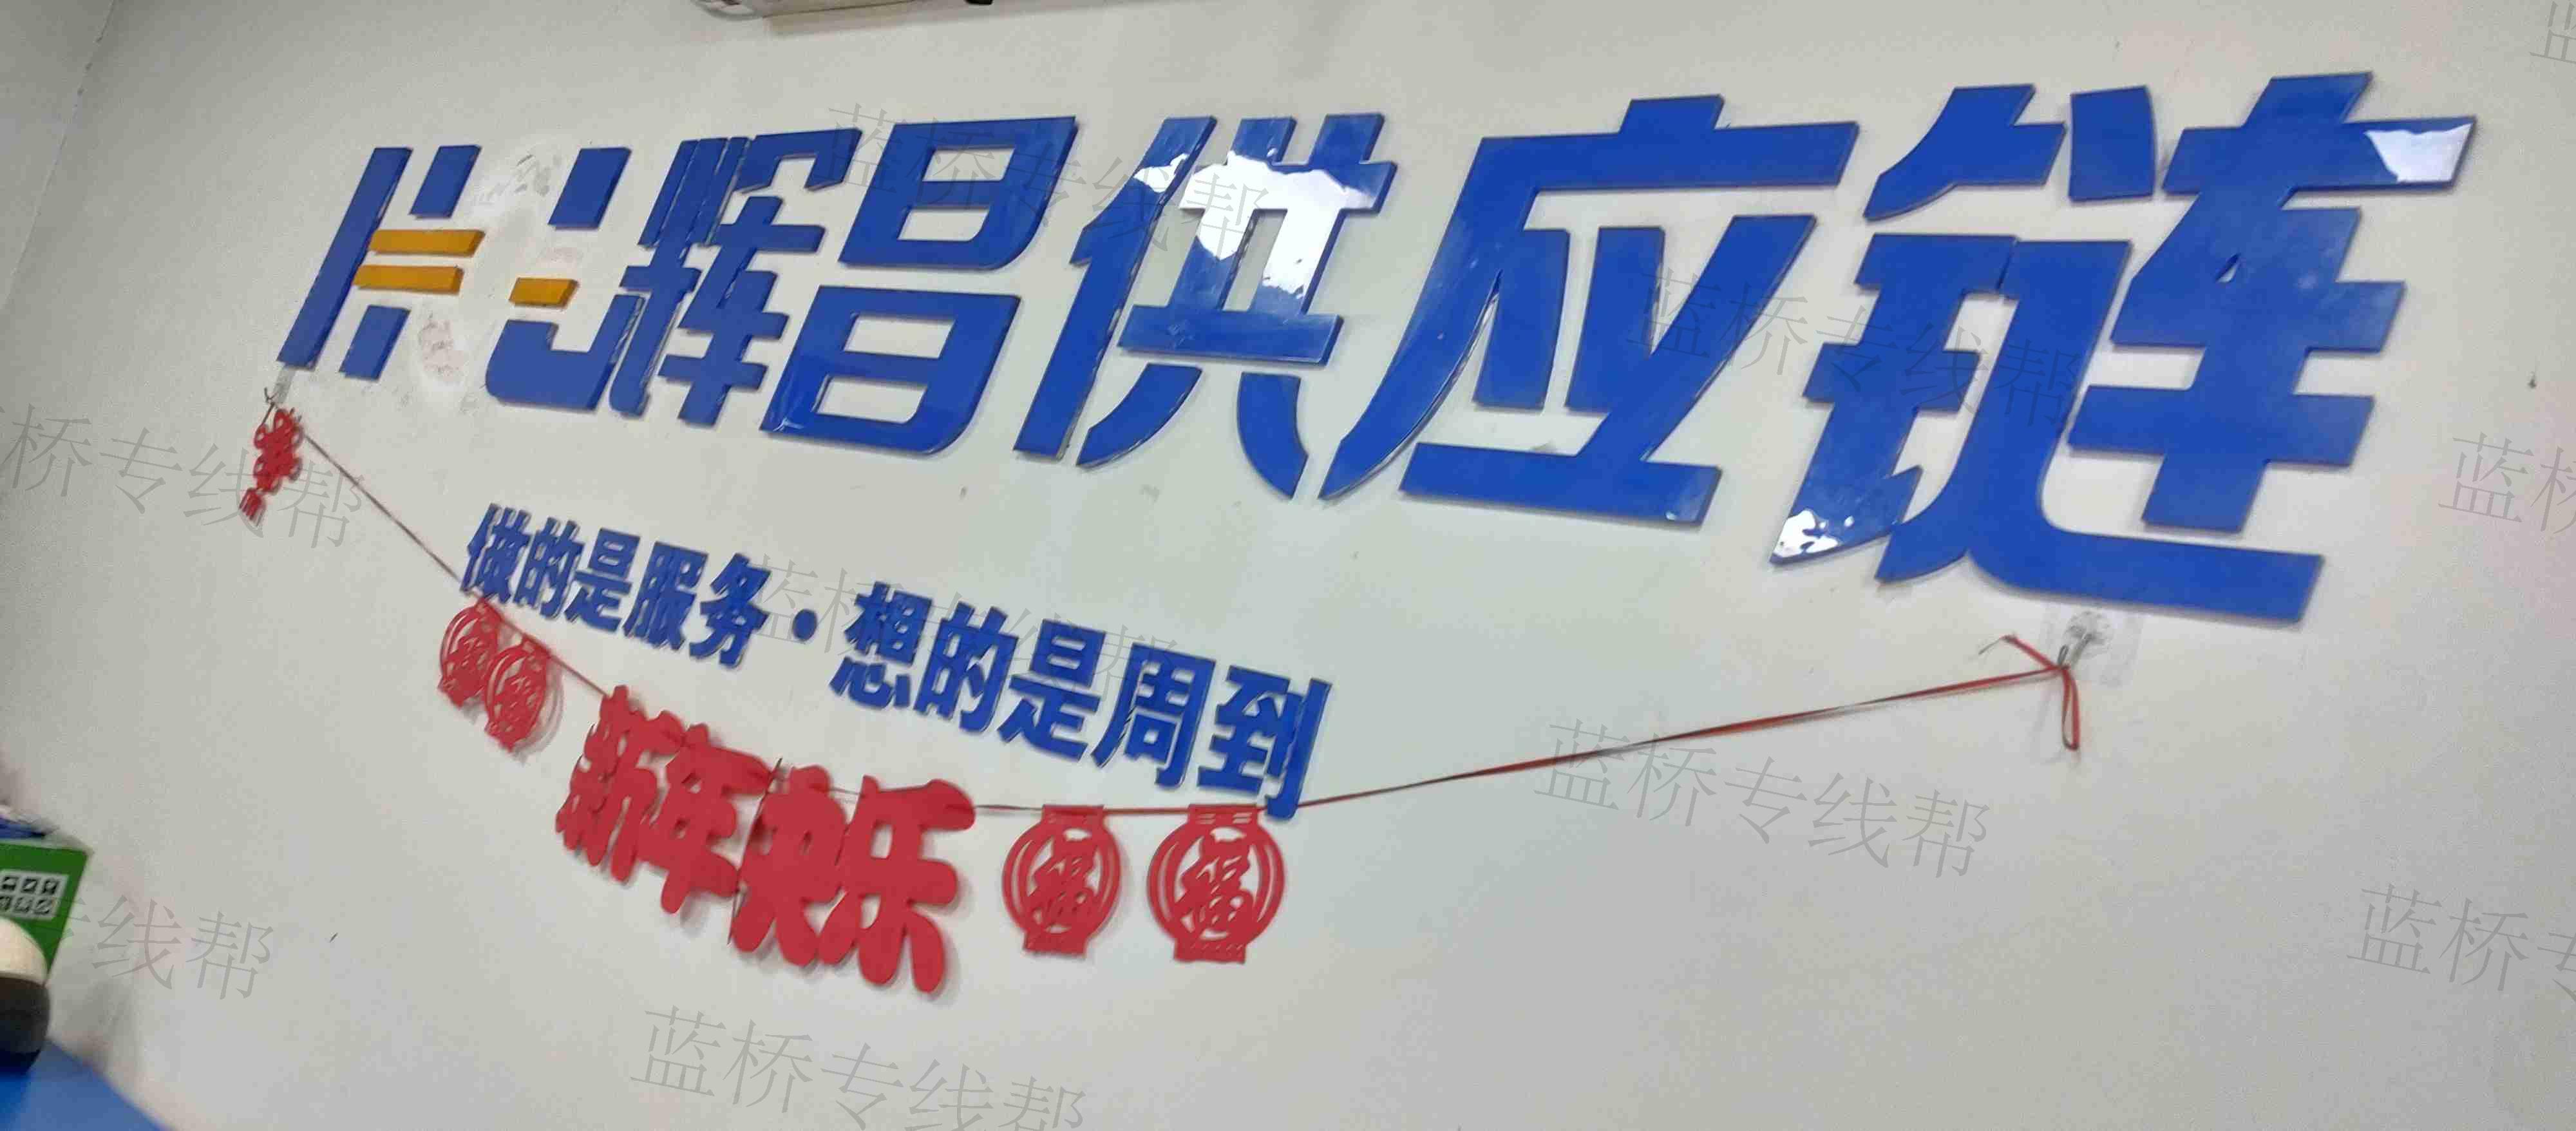 上海辉昌供应链管理有限公司